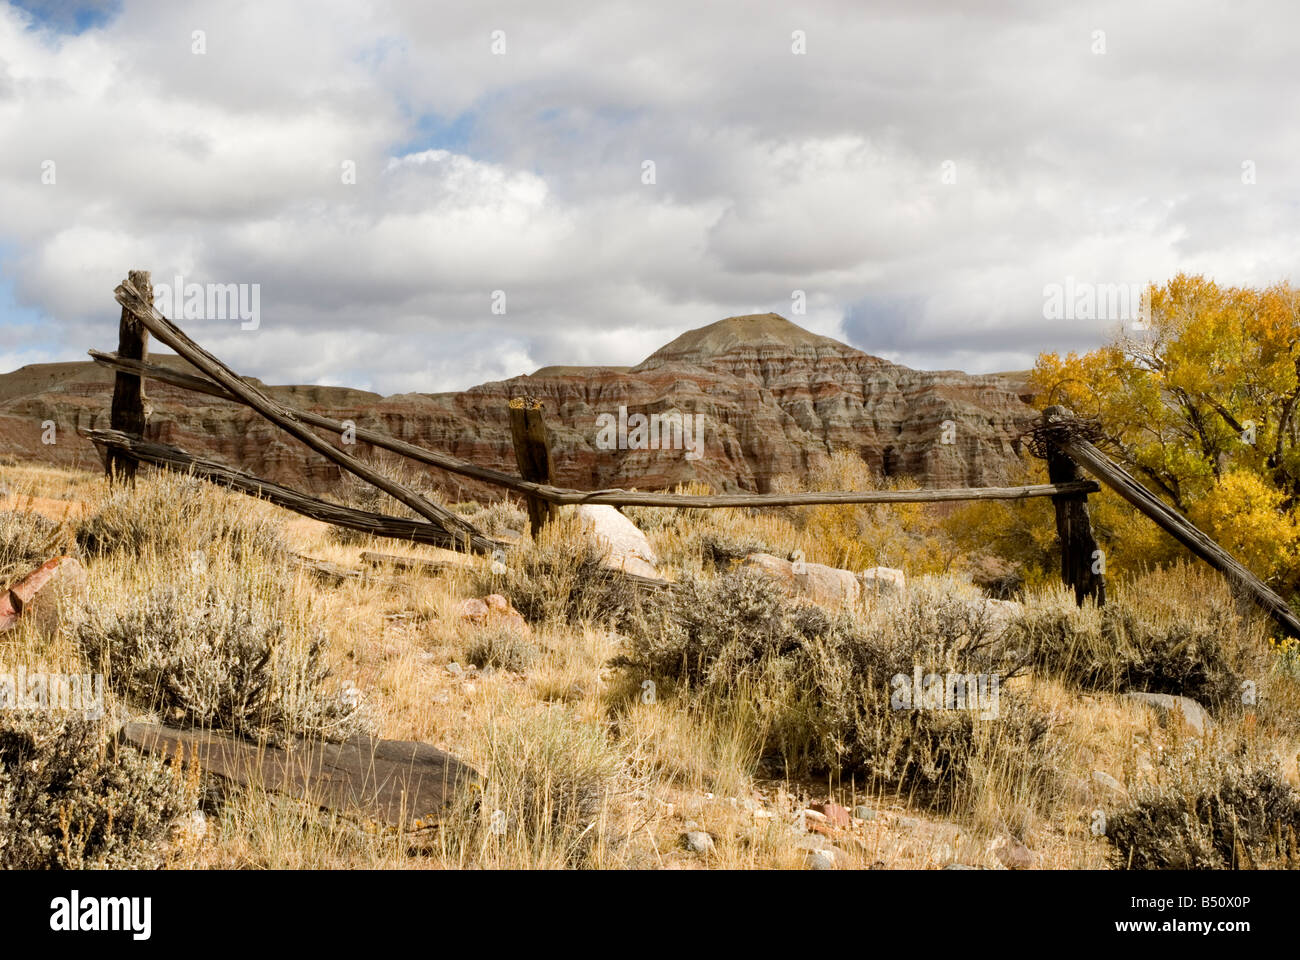 Wyoming rugged landscape. Stock Photo